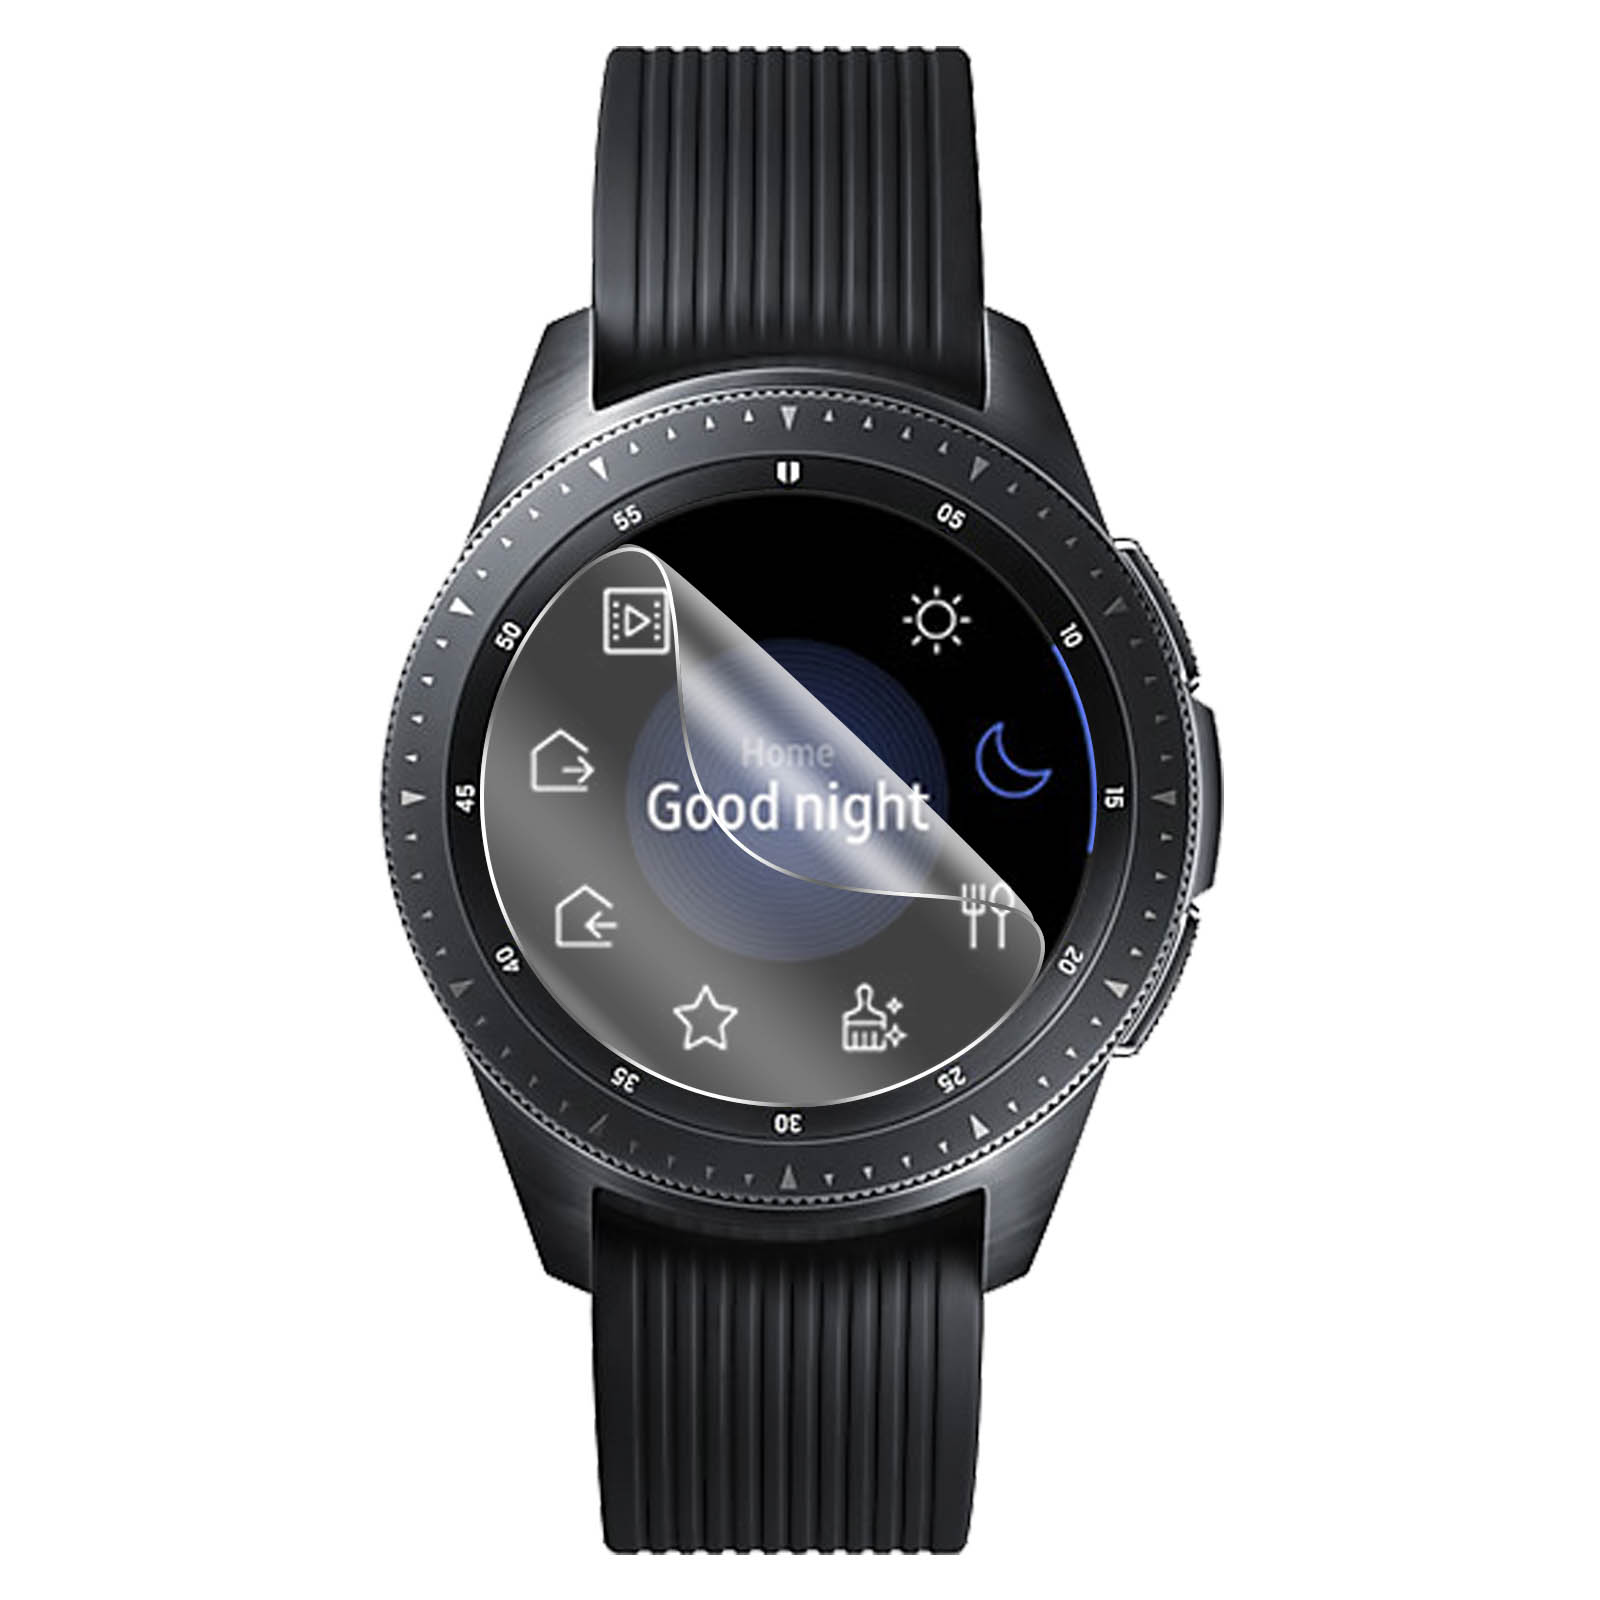 2x Protectores Flexibles Samsung Galaxy Watch 42 Mm Biseladosarentes